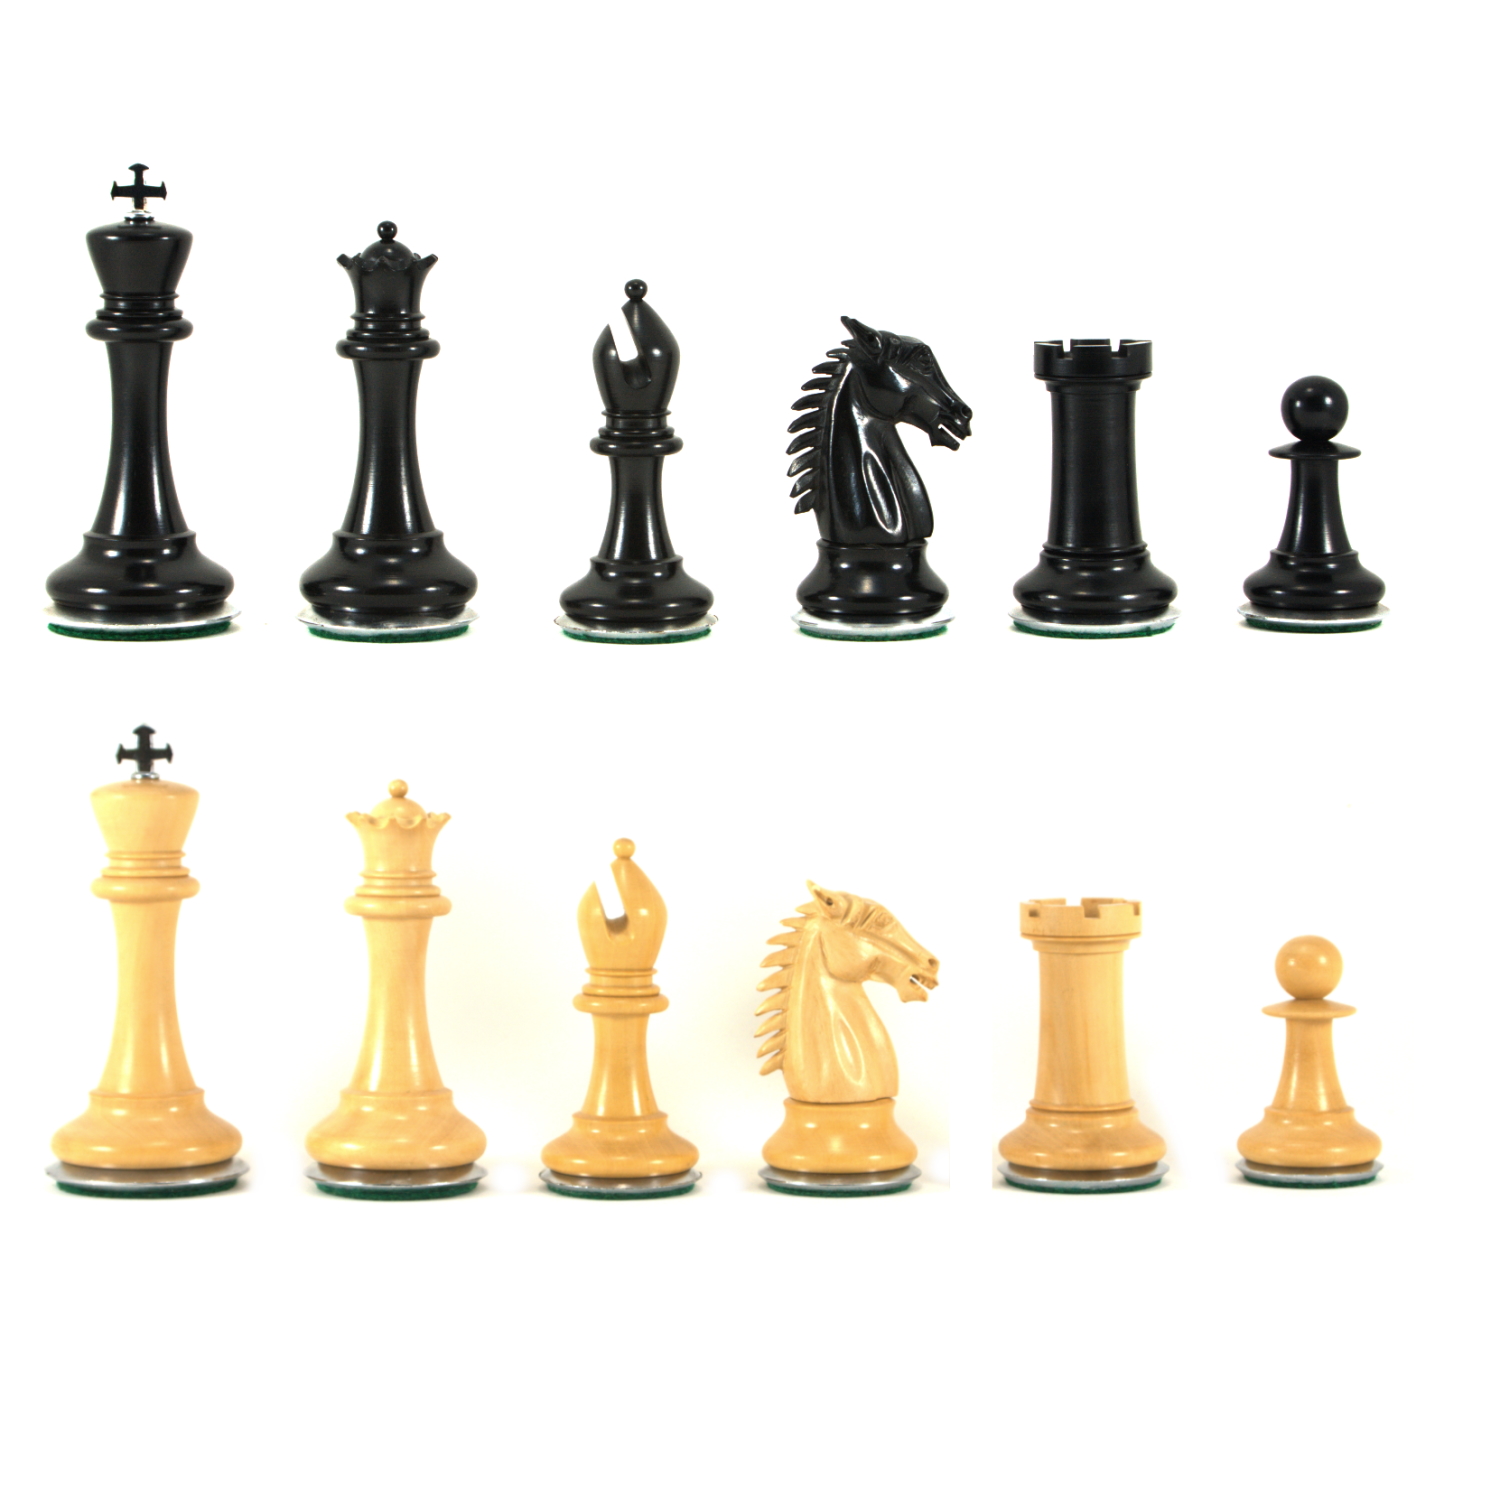 18 MoW Ebony Conqueror Staunton Luxury Chess Set with Steel